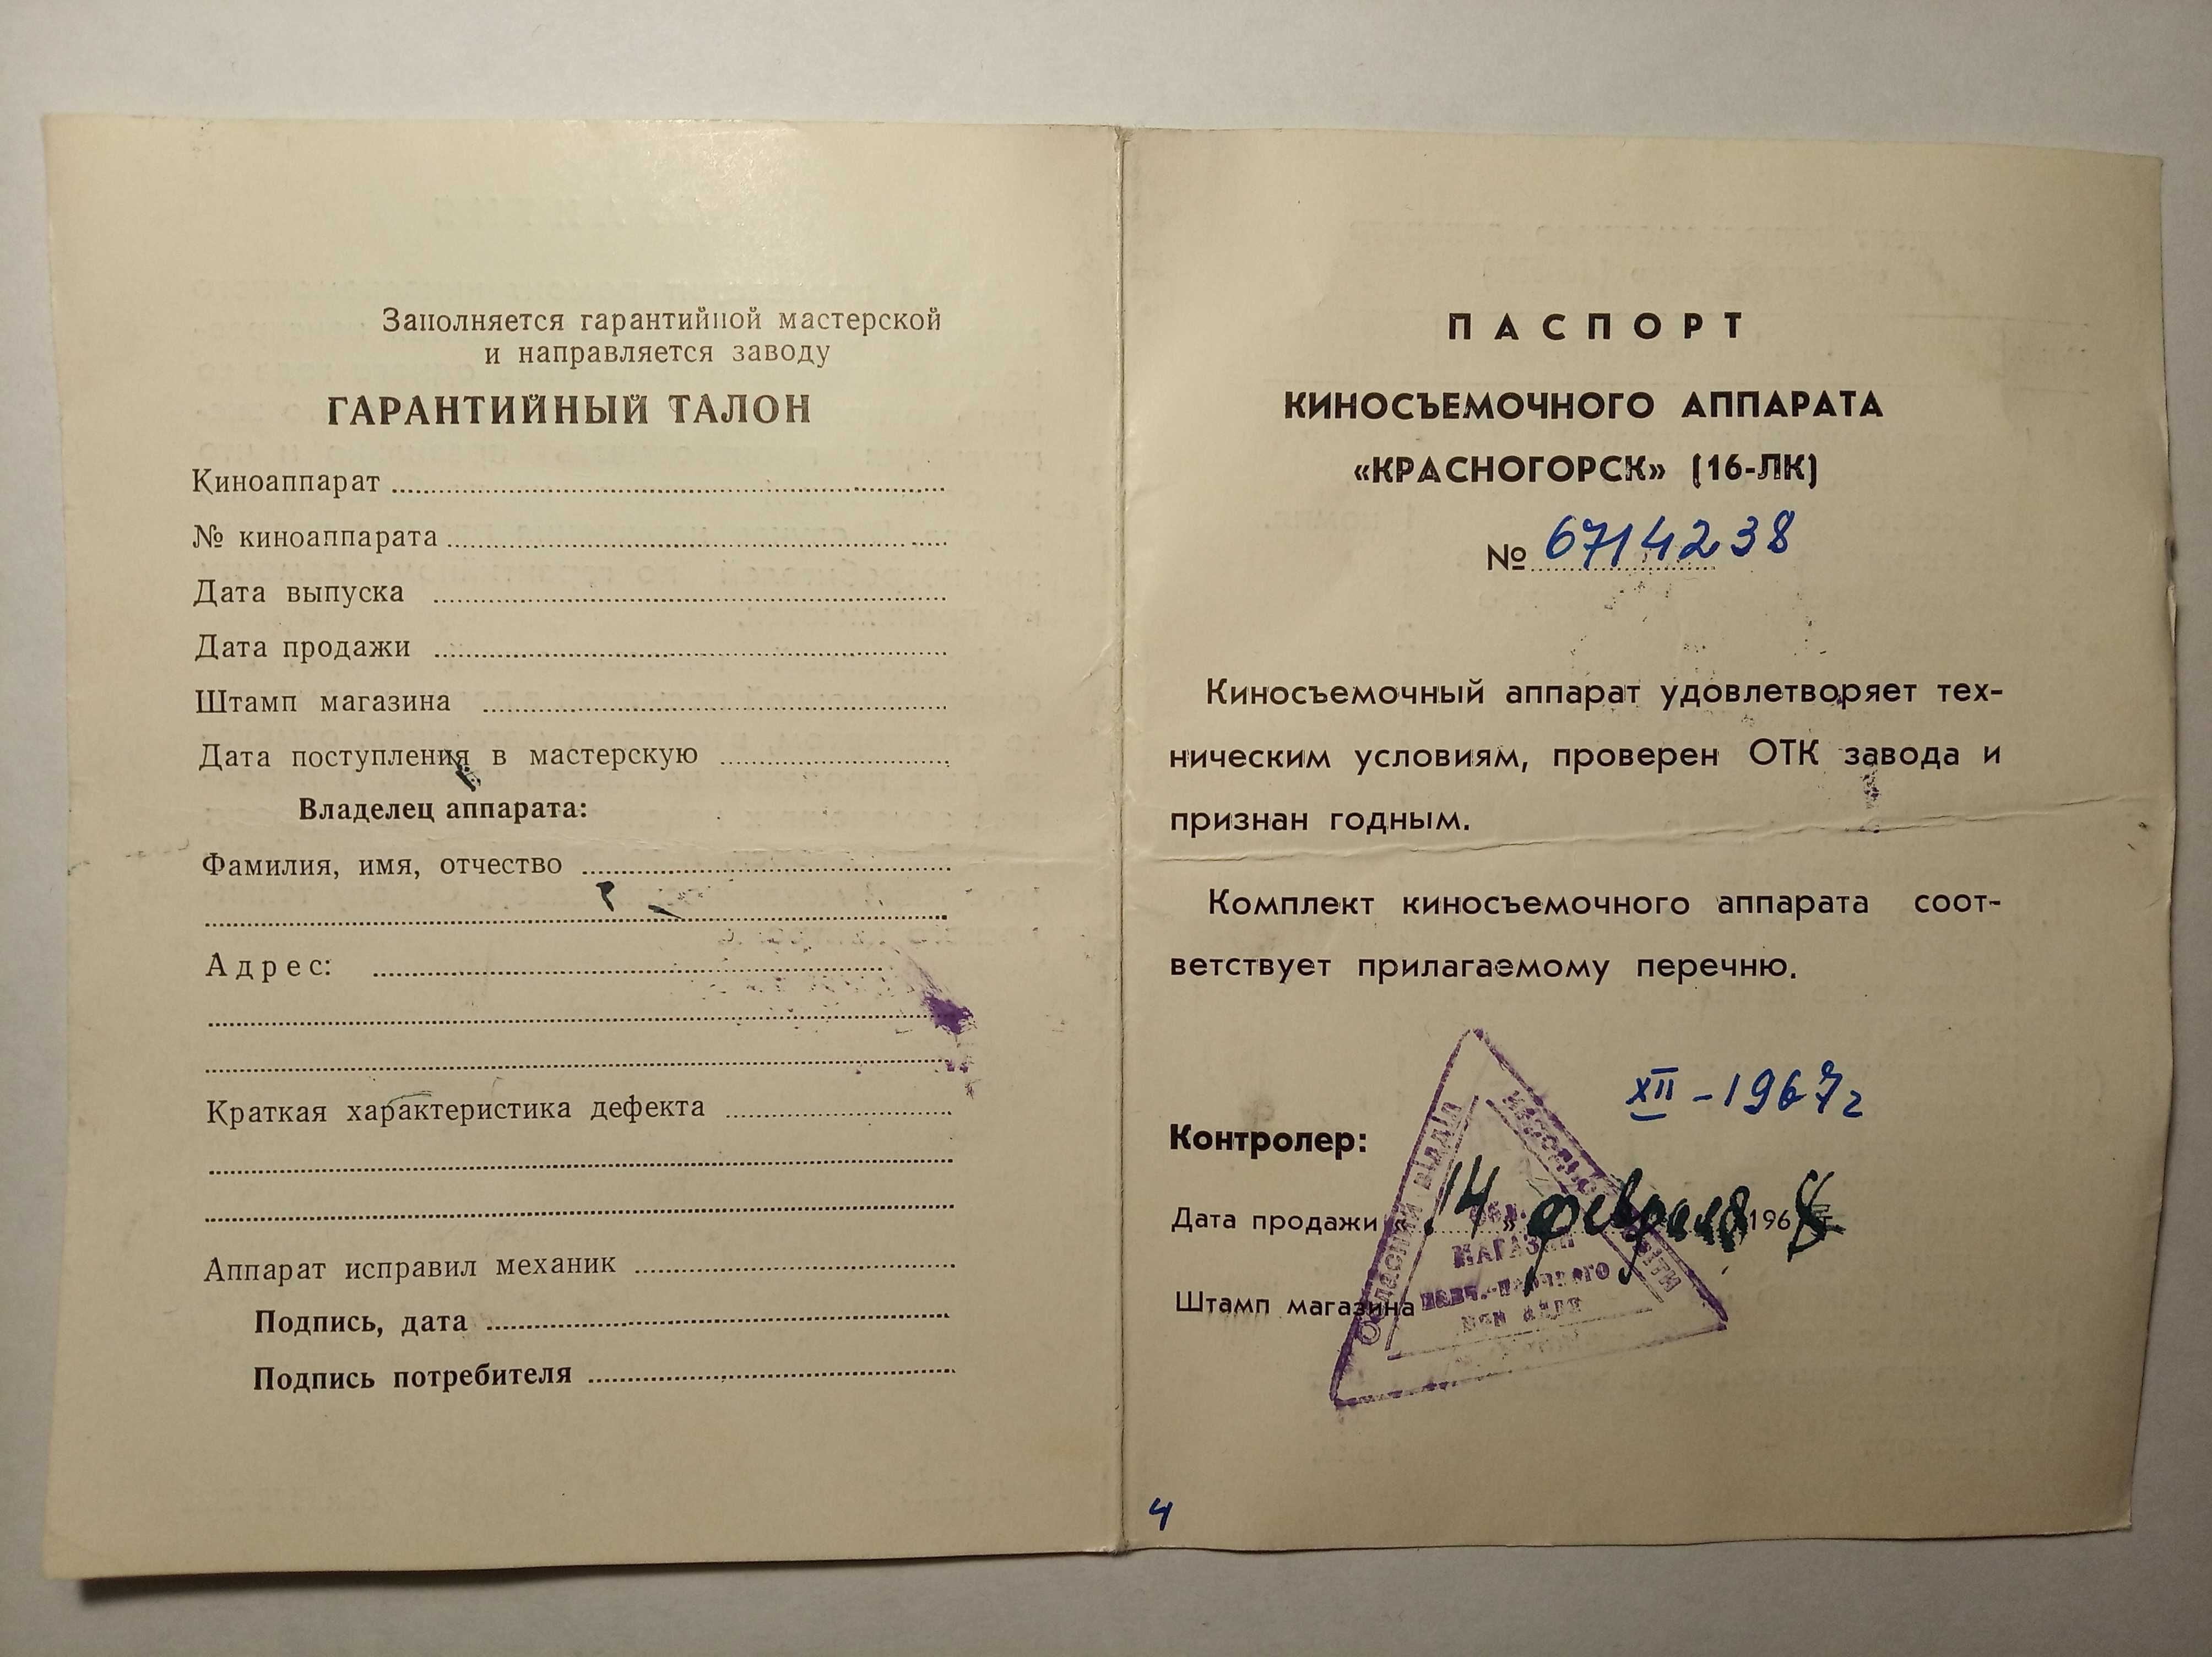 Недорого! Паспорт кинокамеры Красногорск, 1967г.